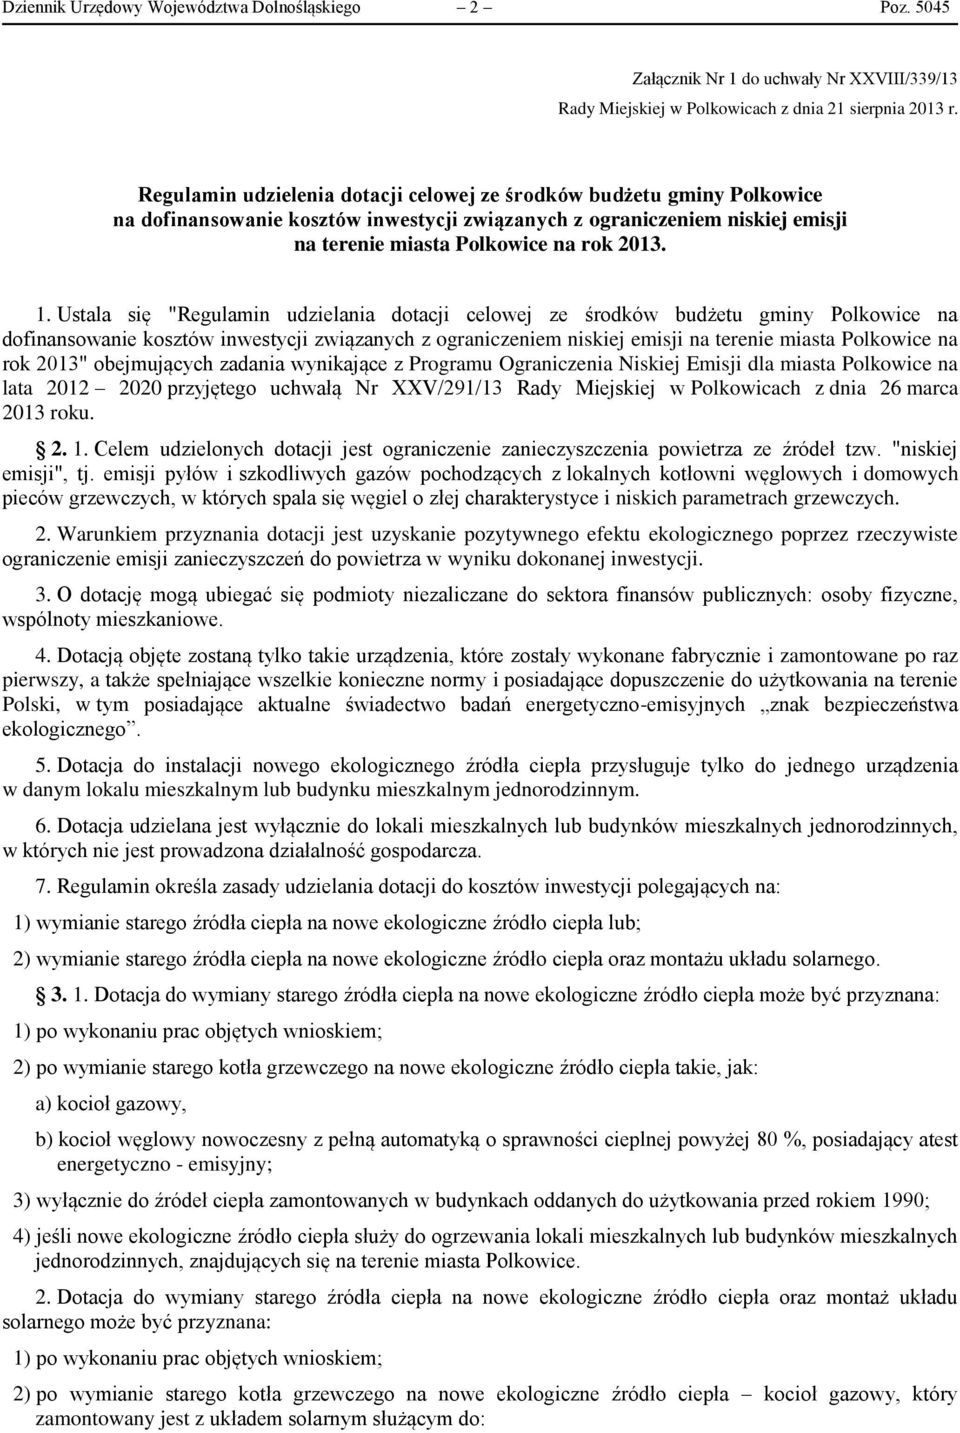 Ustala się "Regulamin udzielania dotacji celowej ze środków budżetu gminy Polkowice na dofinansowanie kosztów inwestycji związanych z ograniczeniem niskiej emisji na terenie miasta Polkowice na rok